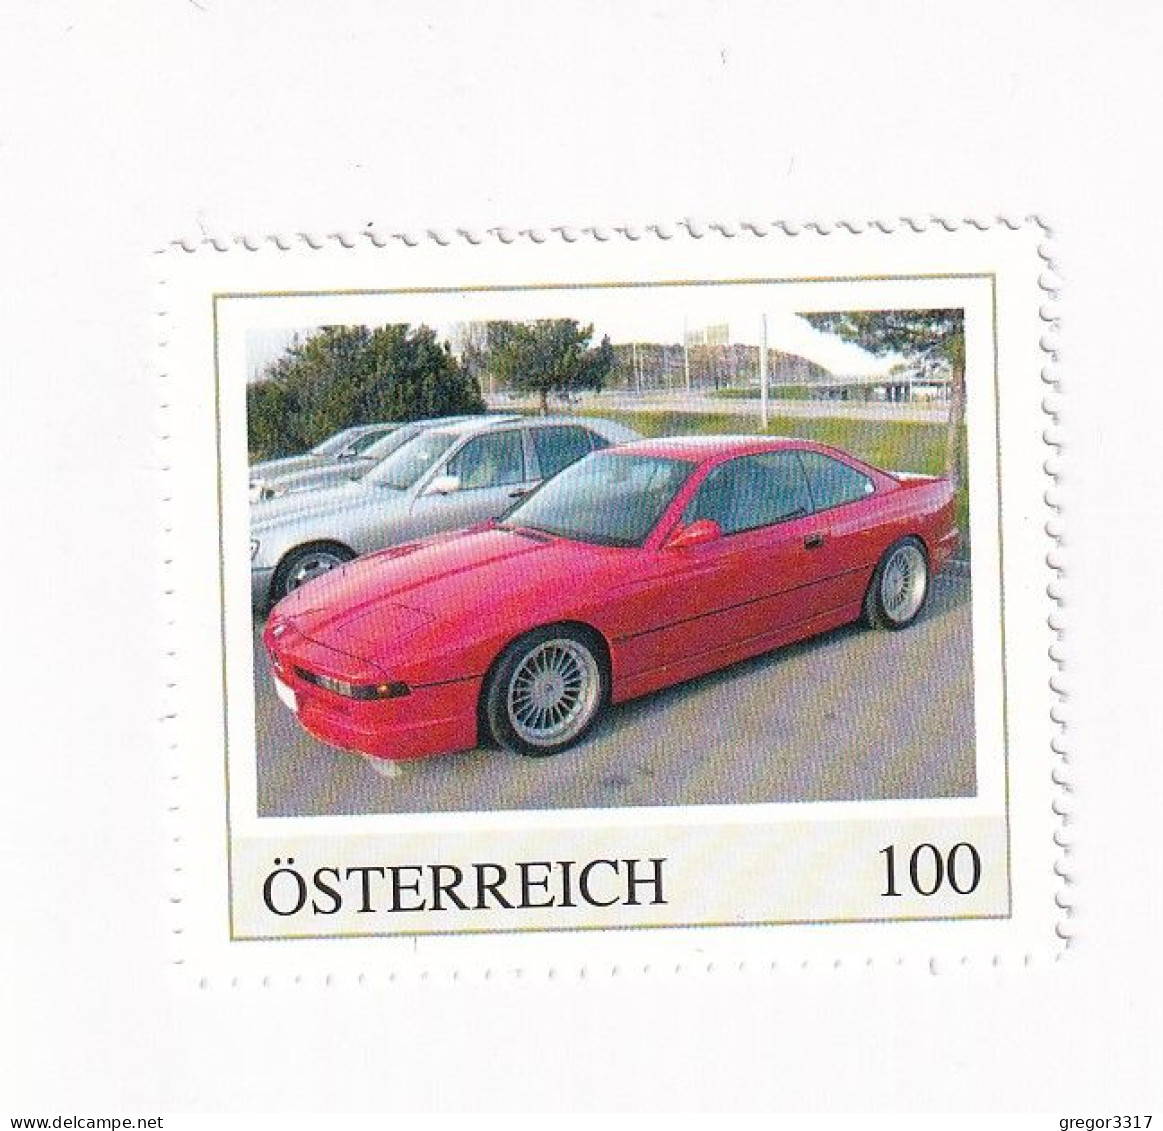 ÖSTERREICH - AUTO -  AUTOMOBILE Im Lauf Der ZEIT - BMW 850i  - Personalisierte Briefmarke ** Postfrisch - Timbres Personnalisés